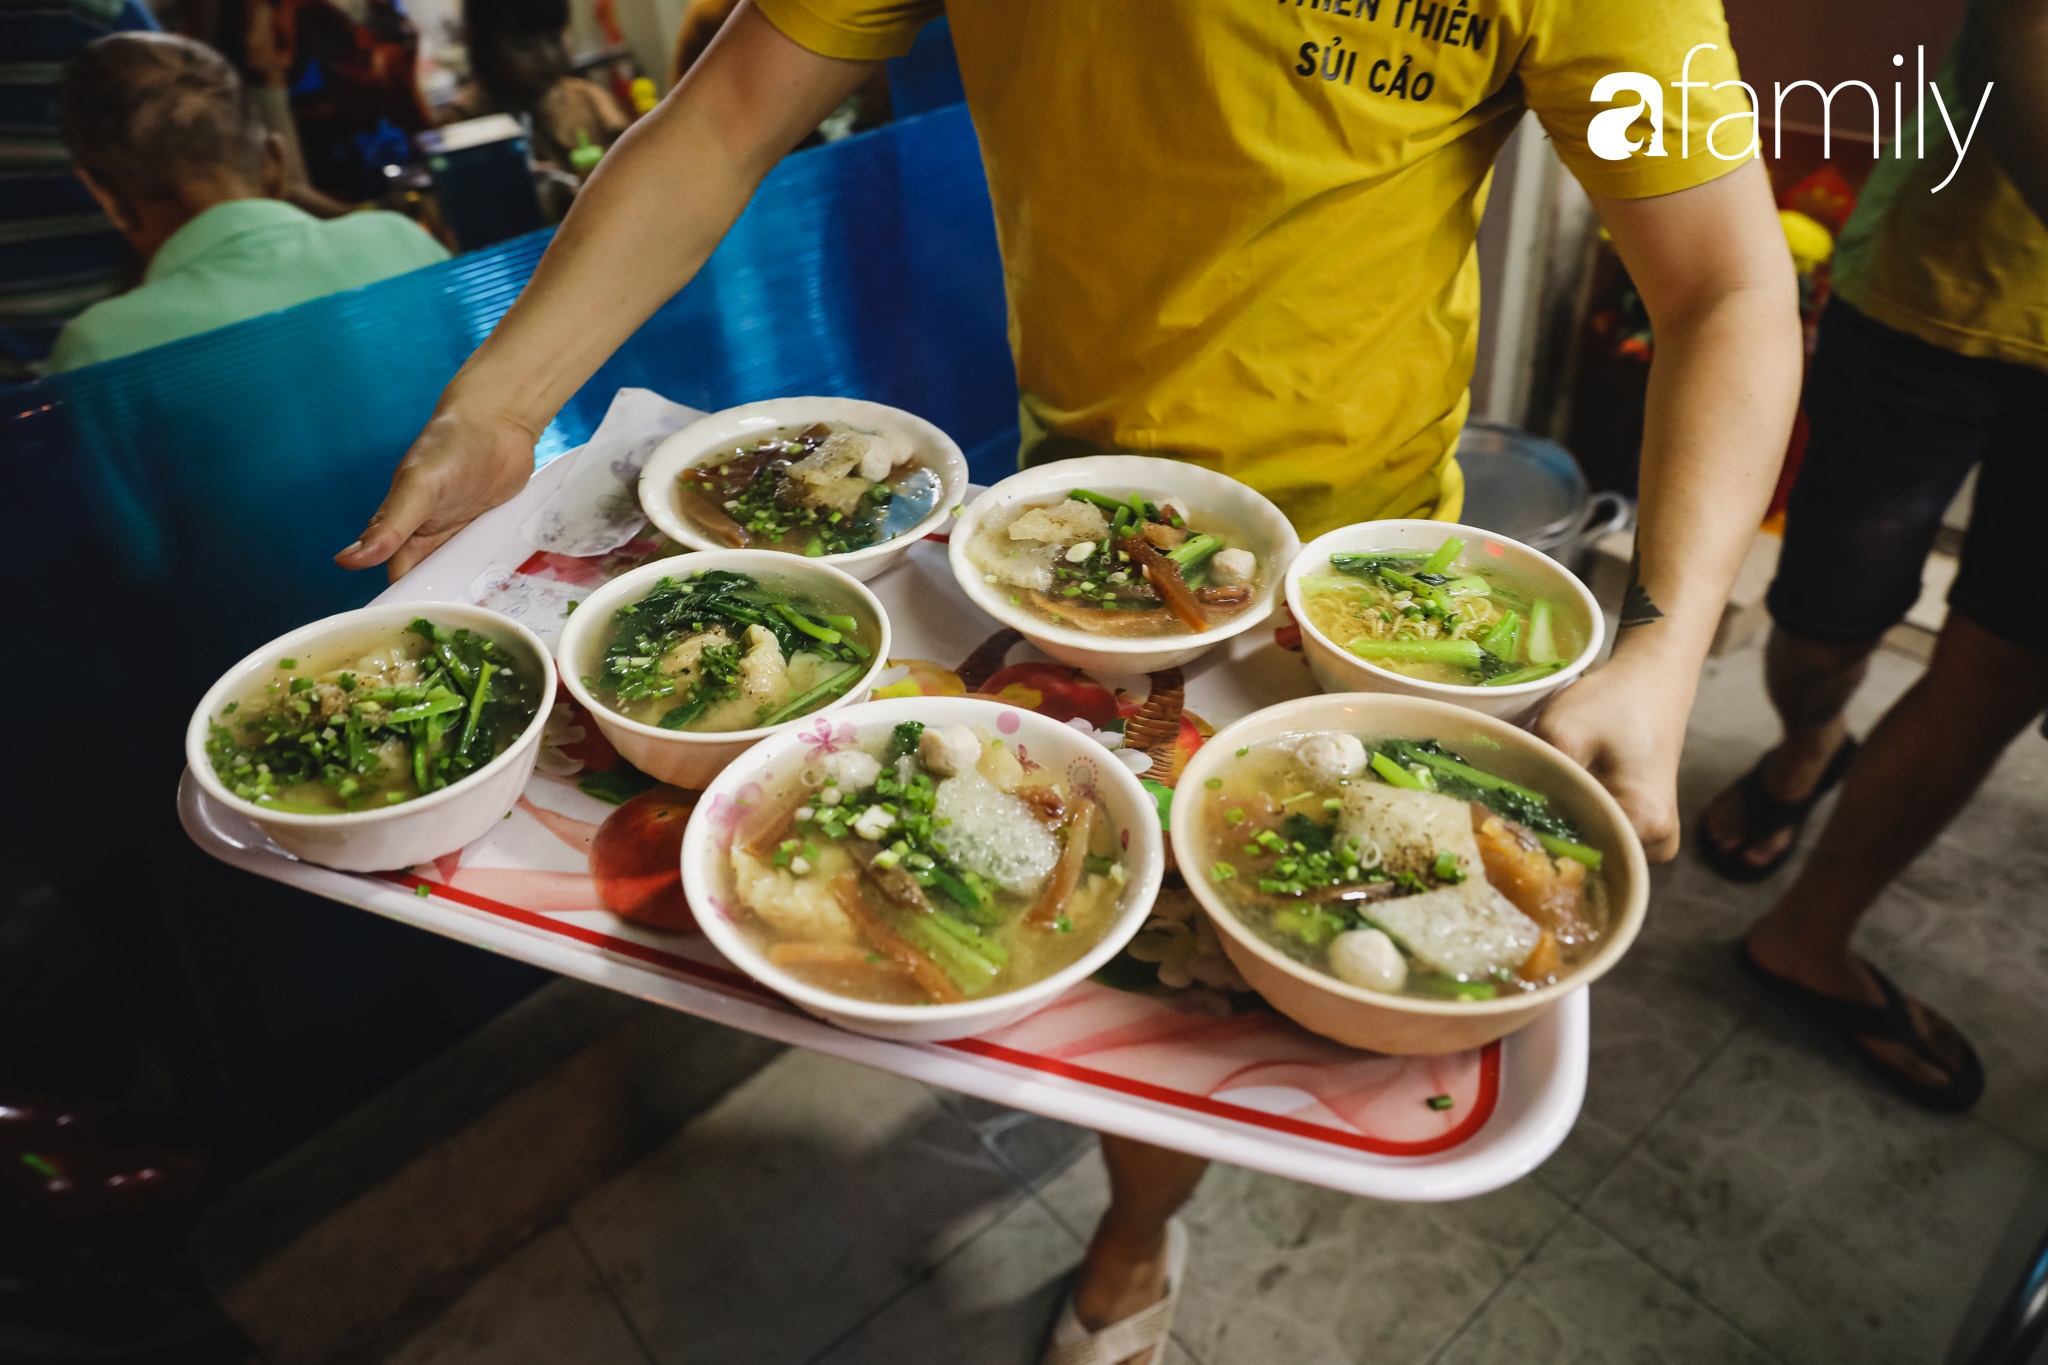 Chiều chiều kéo nhau đi ăn tiệm ở phố sủi cảo Hà Tôn Quyền, nét văn hóa thú vị của người Sài Gòn - Ảnh 11.